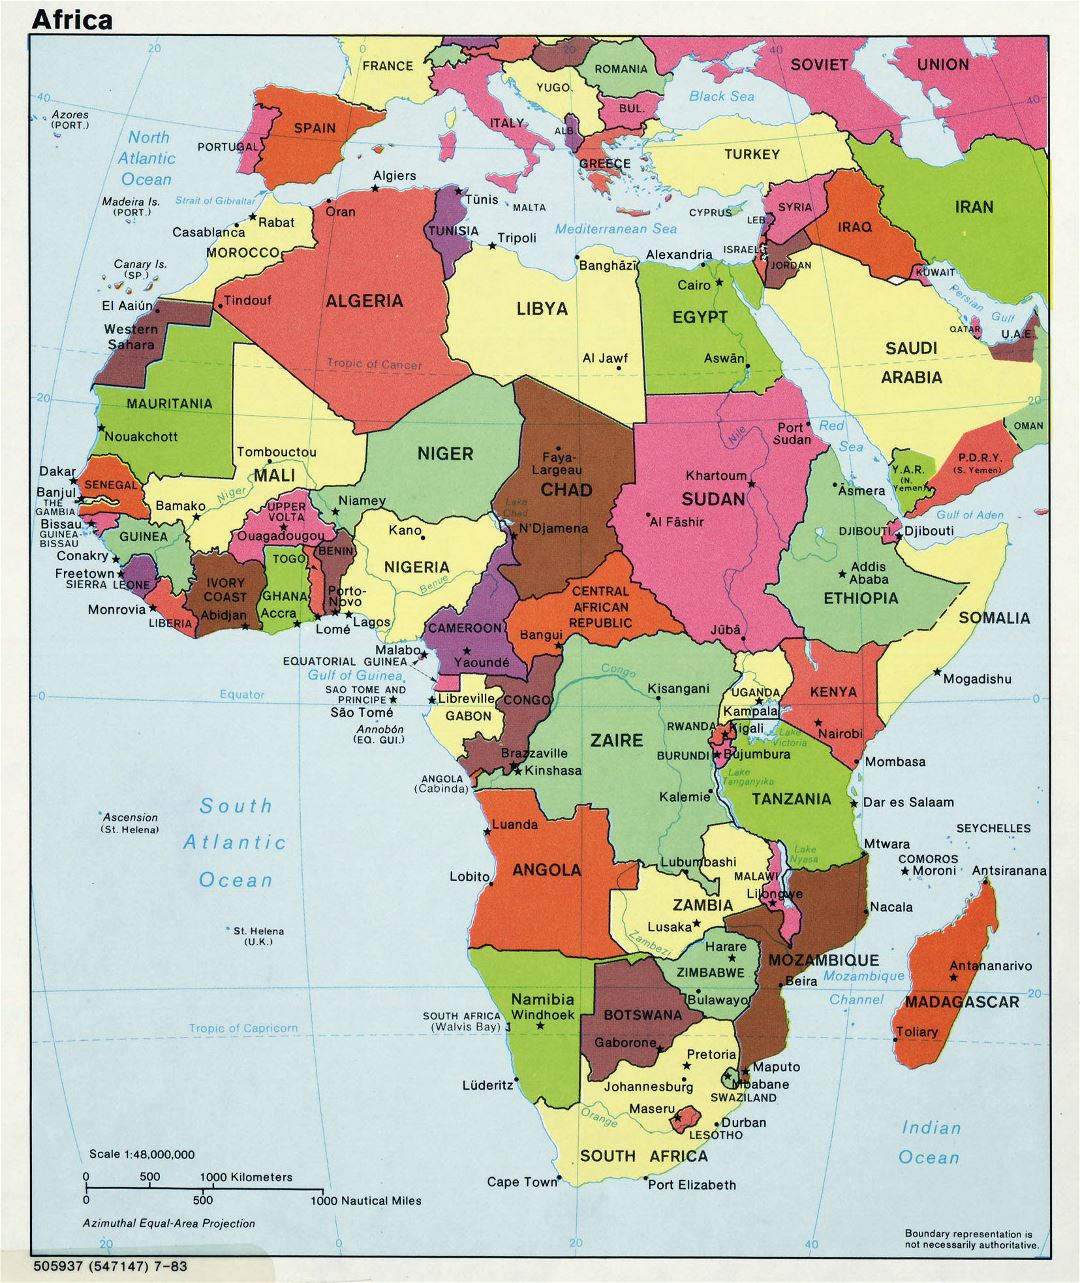 Mapa político grande de África con las principales ciudades y capitales - 1983